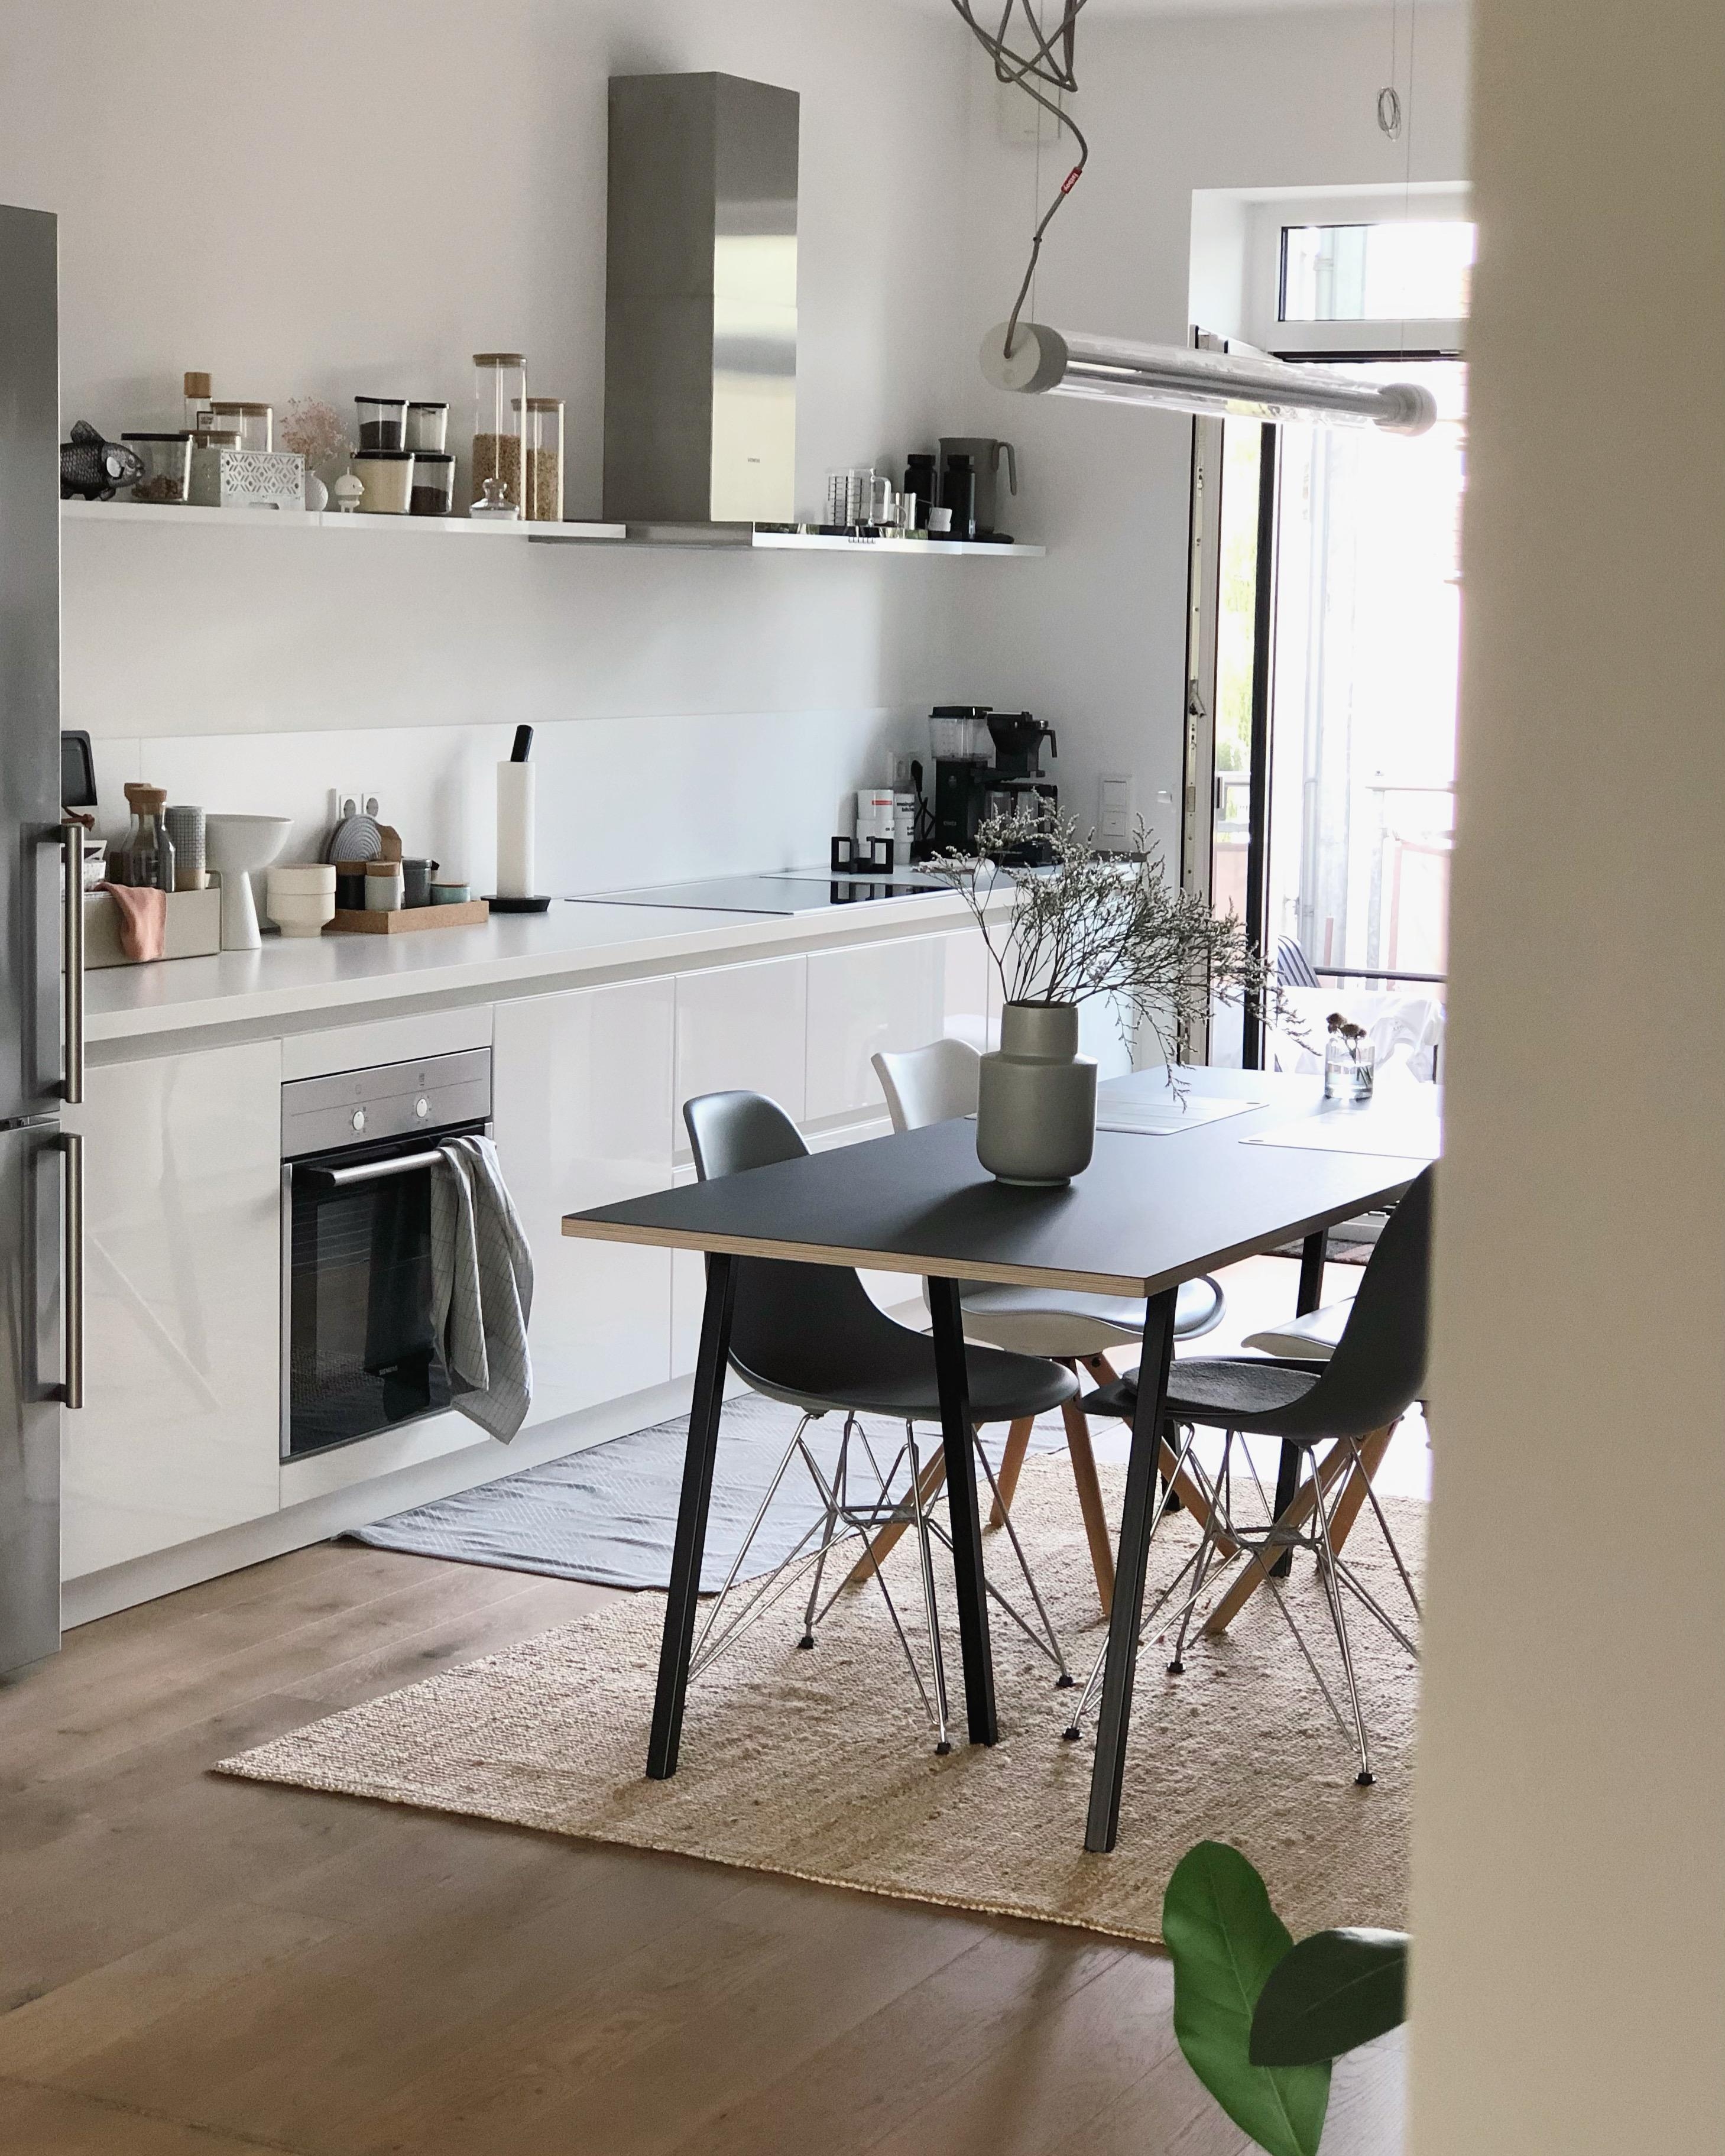 #küche #kitchen #minimalism #esstisch #light #essbereich #whiteliving #interior #couchstyle #home